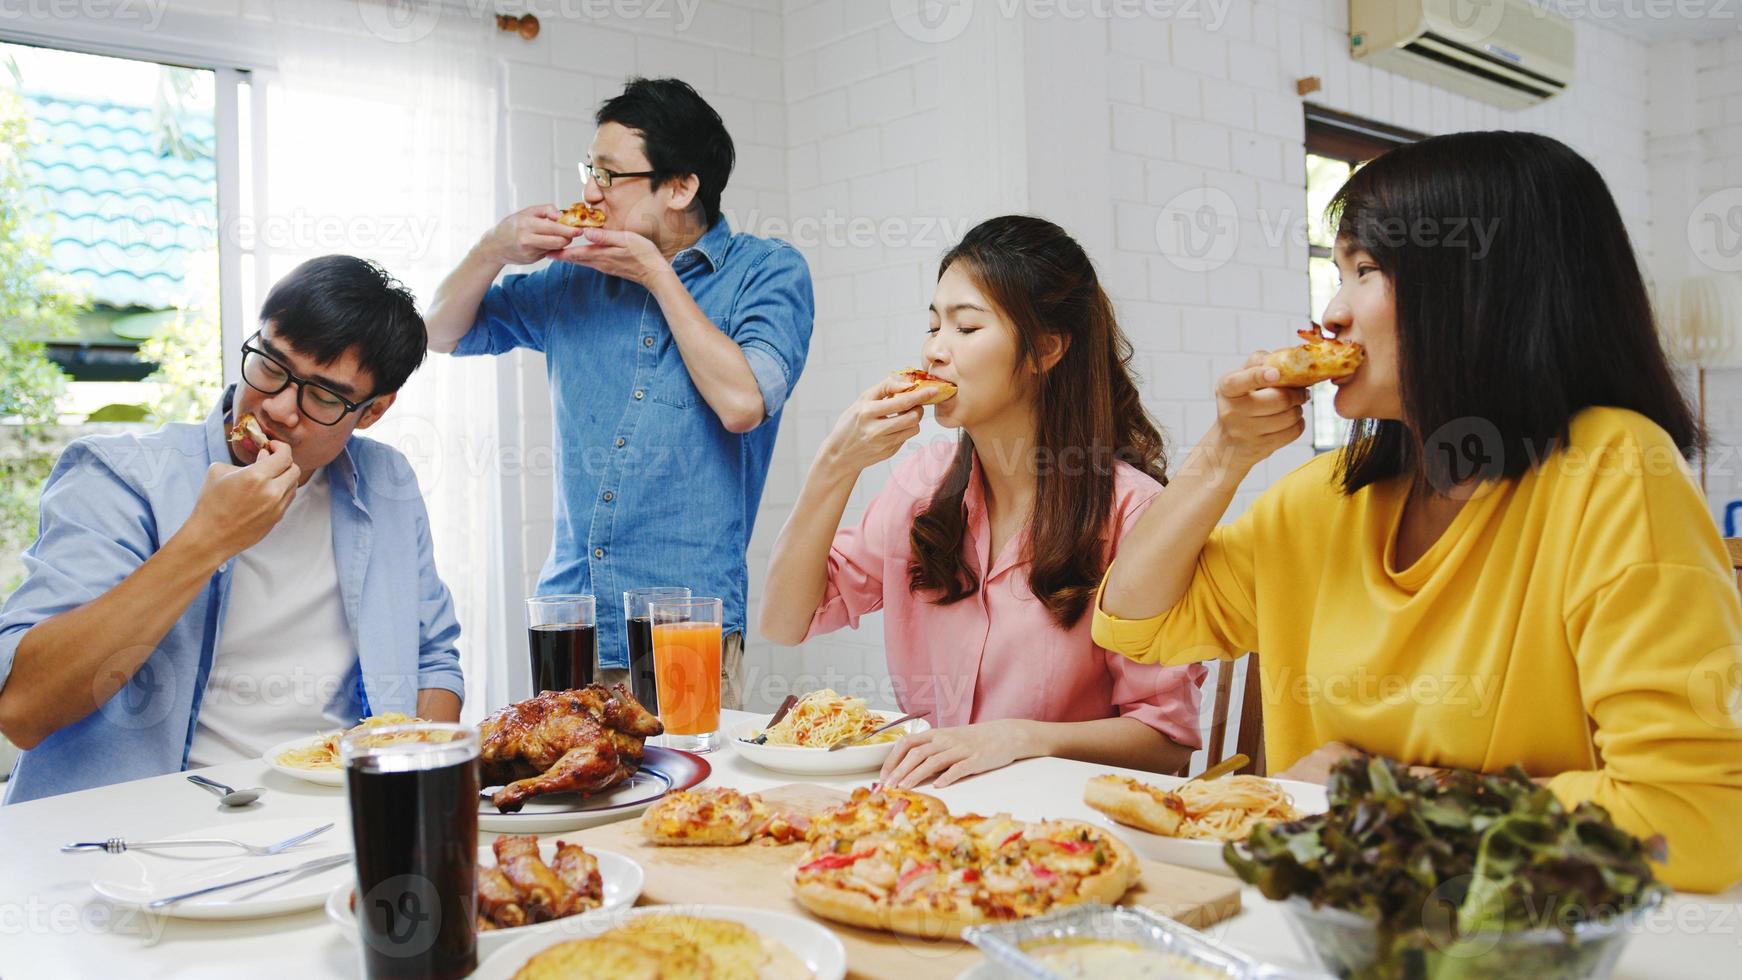 gelukkige jonge vriendengroep die thuis luncht. Azië familiefeest pizza eten en lachen terwijl u samen aan de eettafel zit thuis. viering vakantie en saamhorigheid. foto